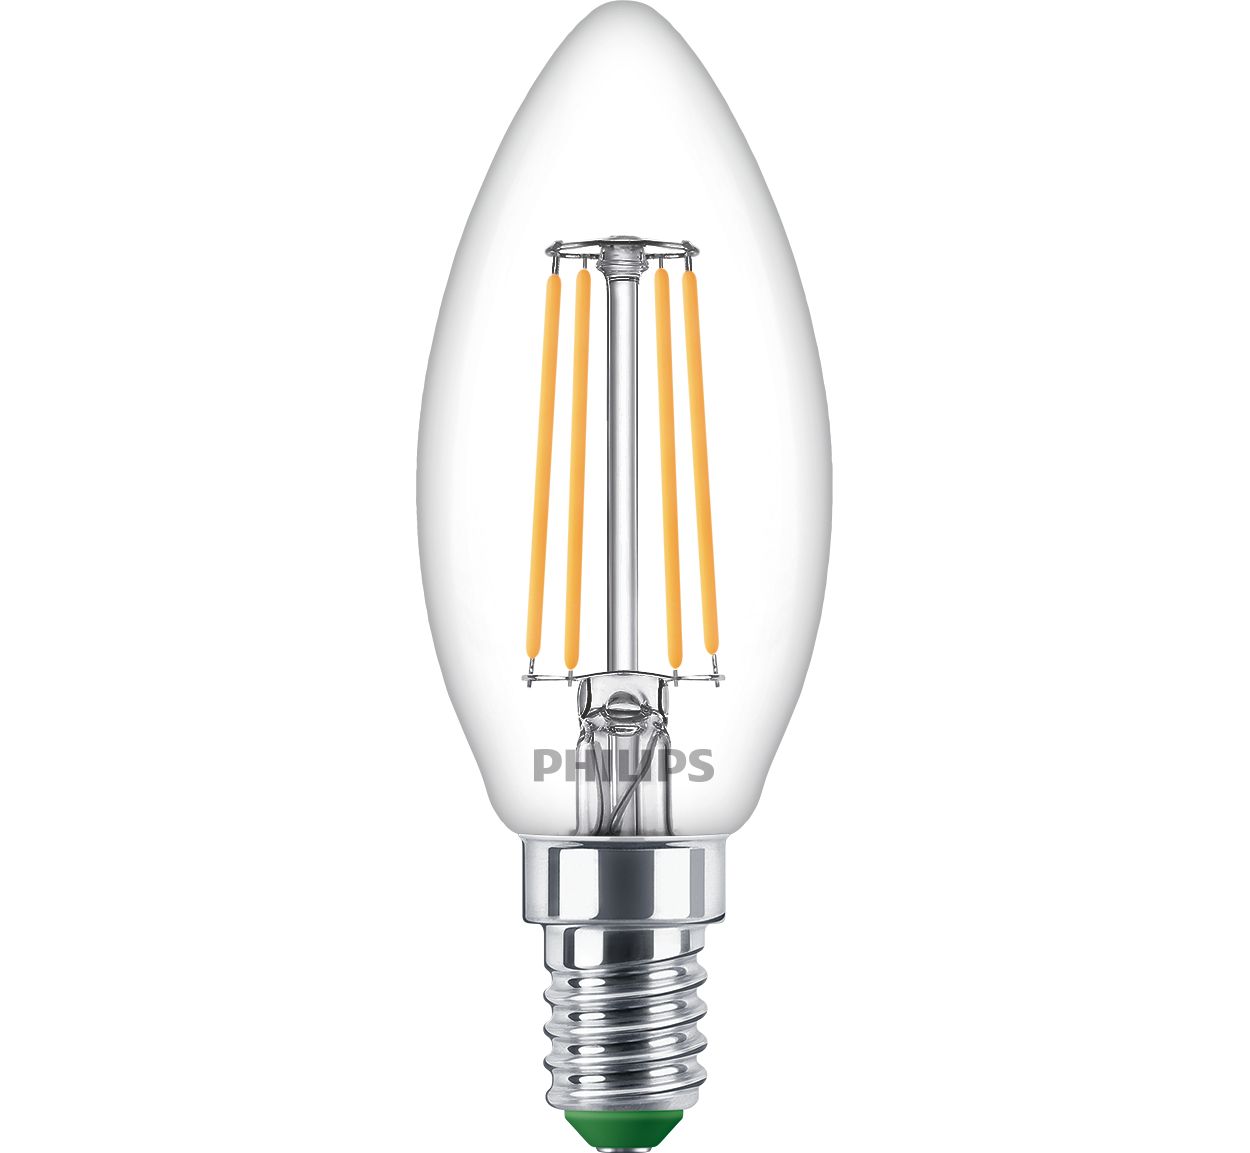 UltraEfficient-Leuchtmittel – unsere bisher energieeffizientestes LED-Leuchtmittel